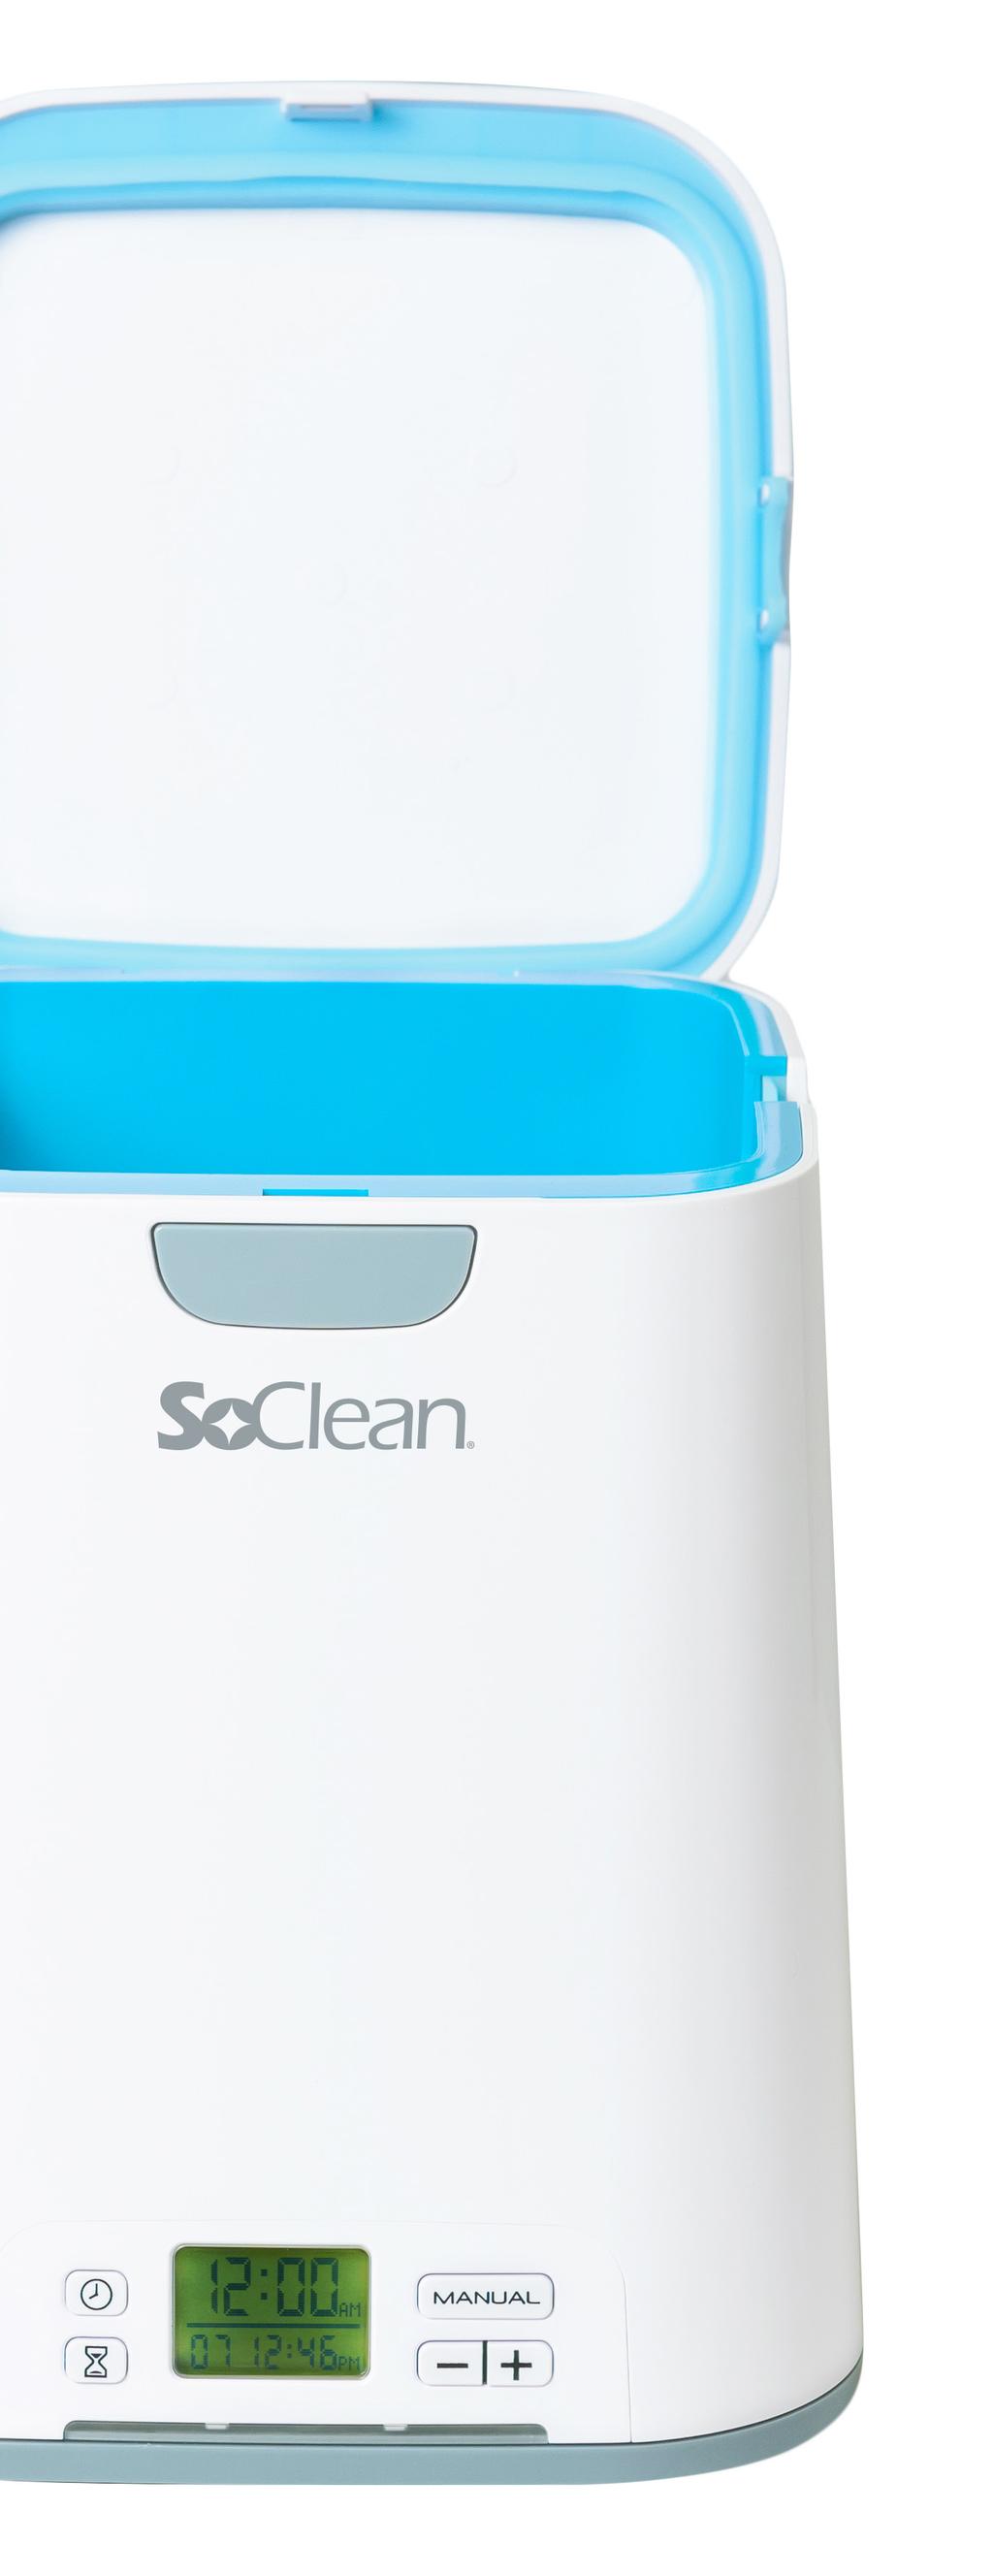 Die schnellere, einfachere, effektivere Lösung Für Patienten, die einen besseren Weg zur Erhaltung eines sauberen CPAP suchen, ist das automatisierte CPAP-Reinigungs- und Desinfektionsgerät SoClean